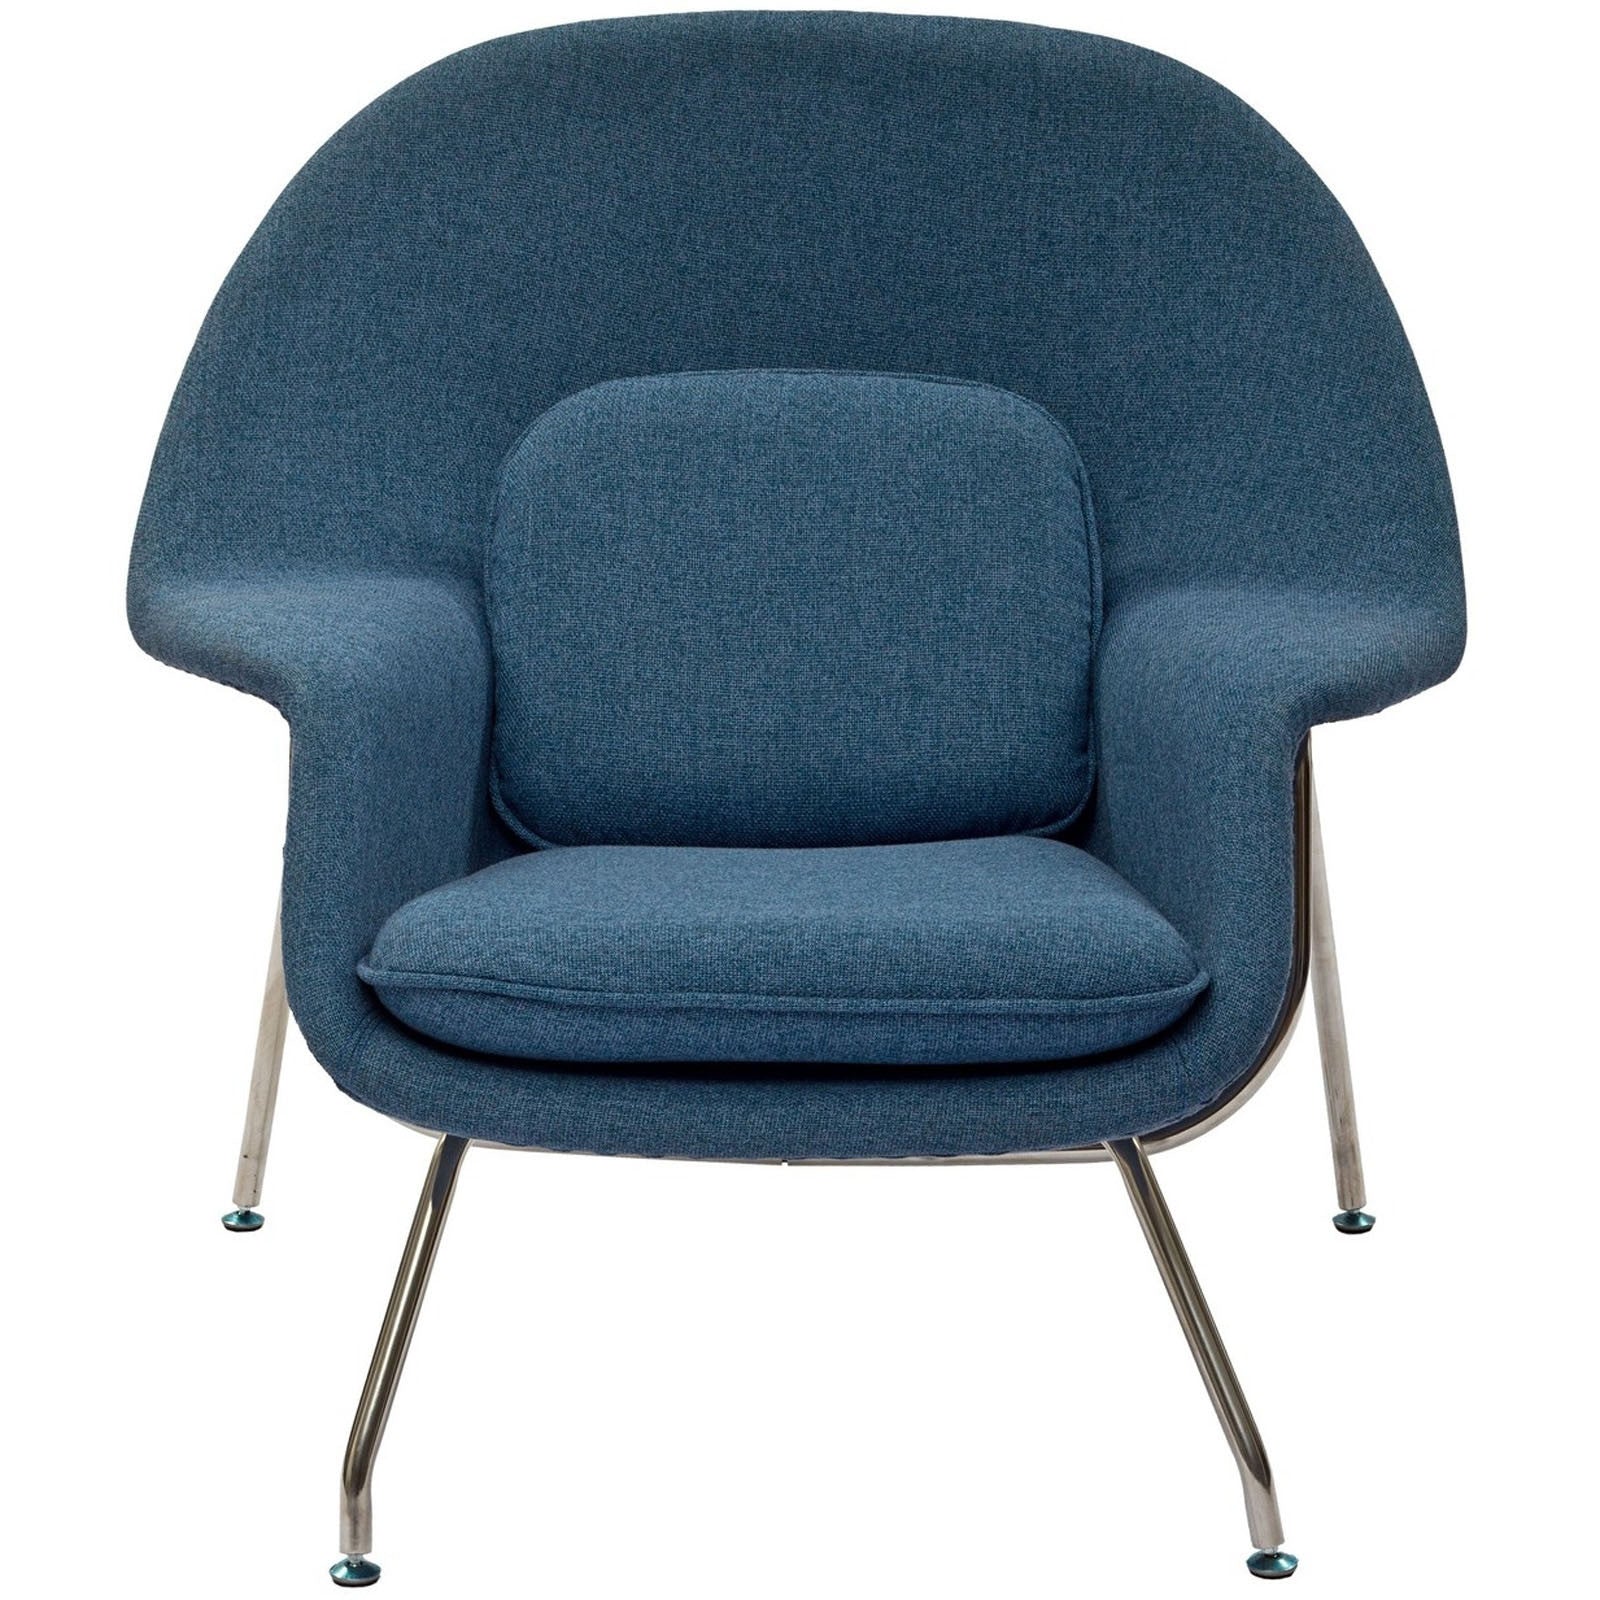 Wander Lounge Chair Blue Tweed